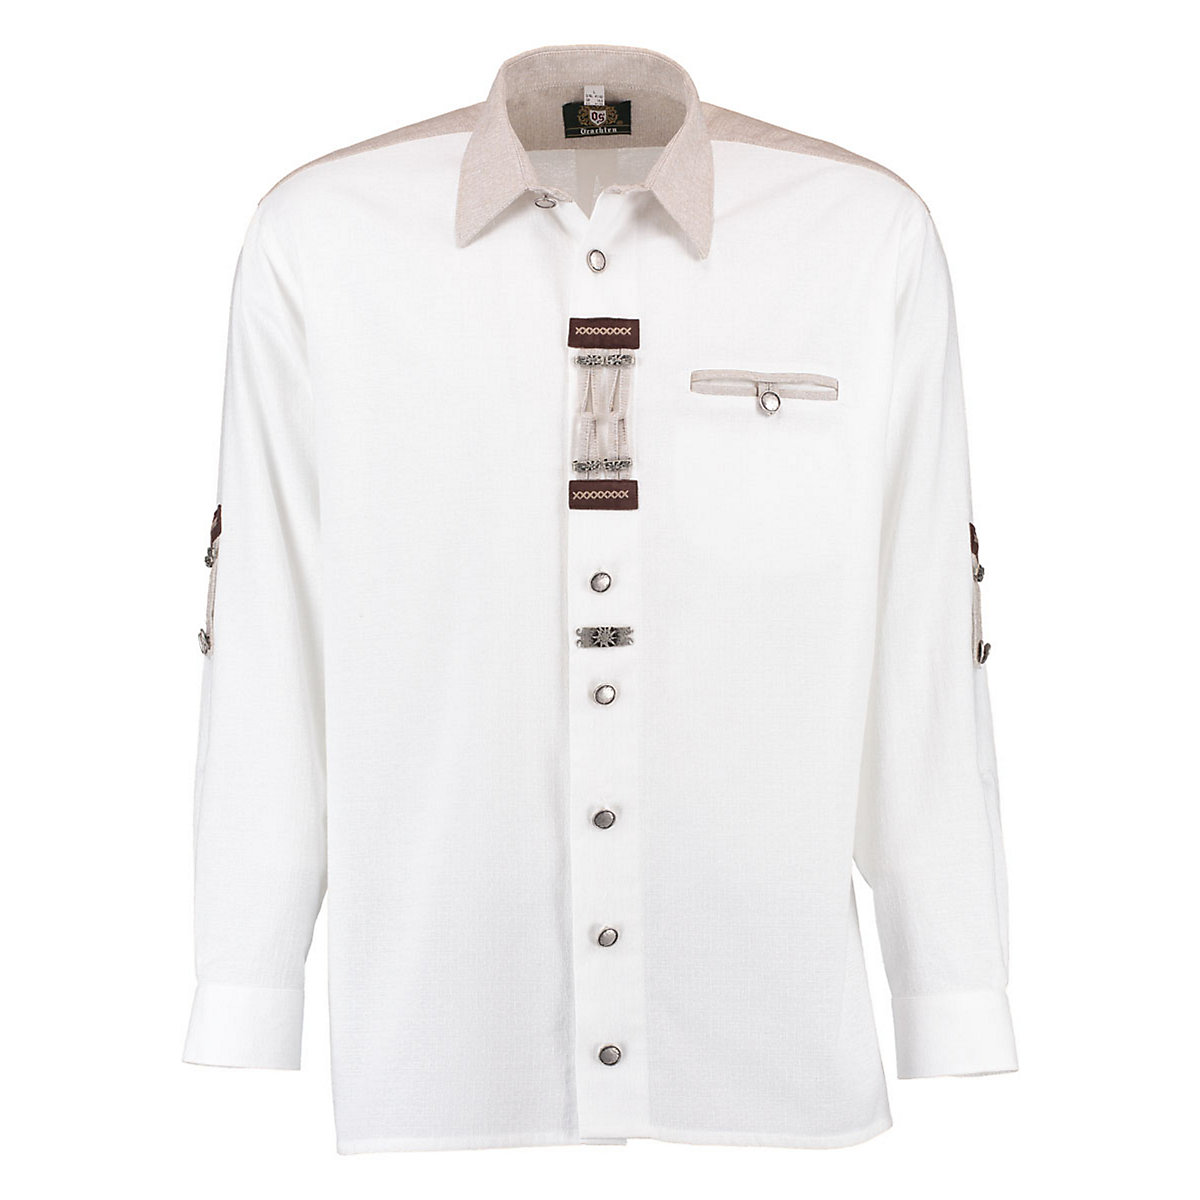 OS Trachten Herren Langarm Trachtenhemd mit Paspeltasche Zierteile auf der Knopfleiste Nevai weiß